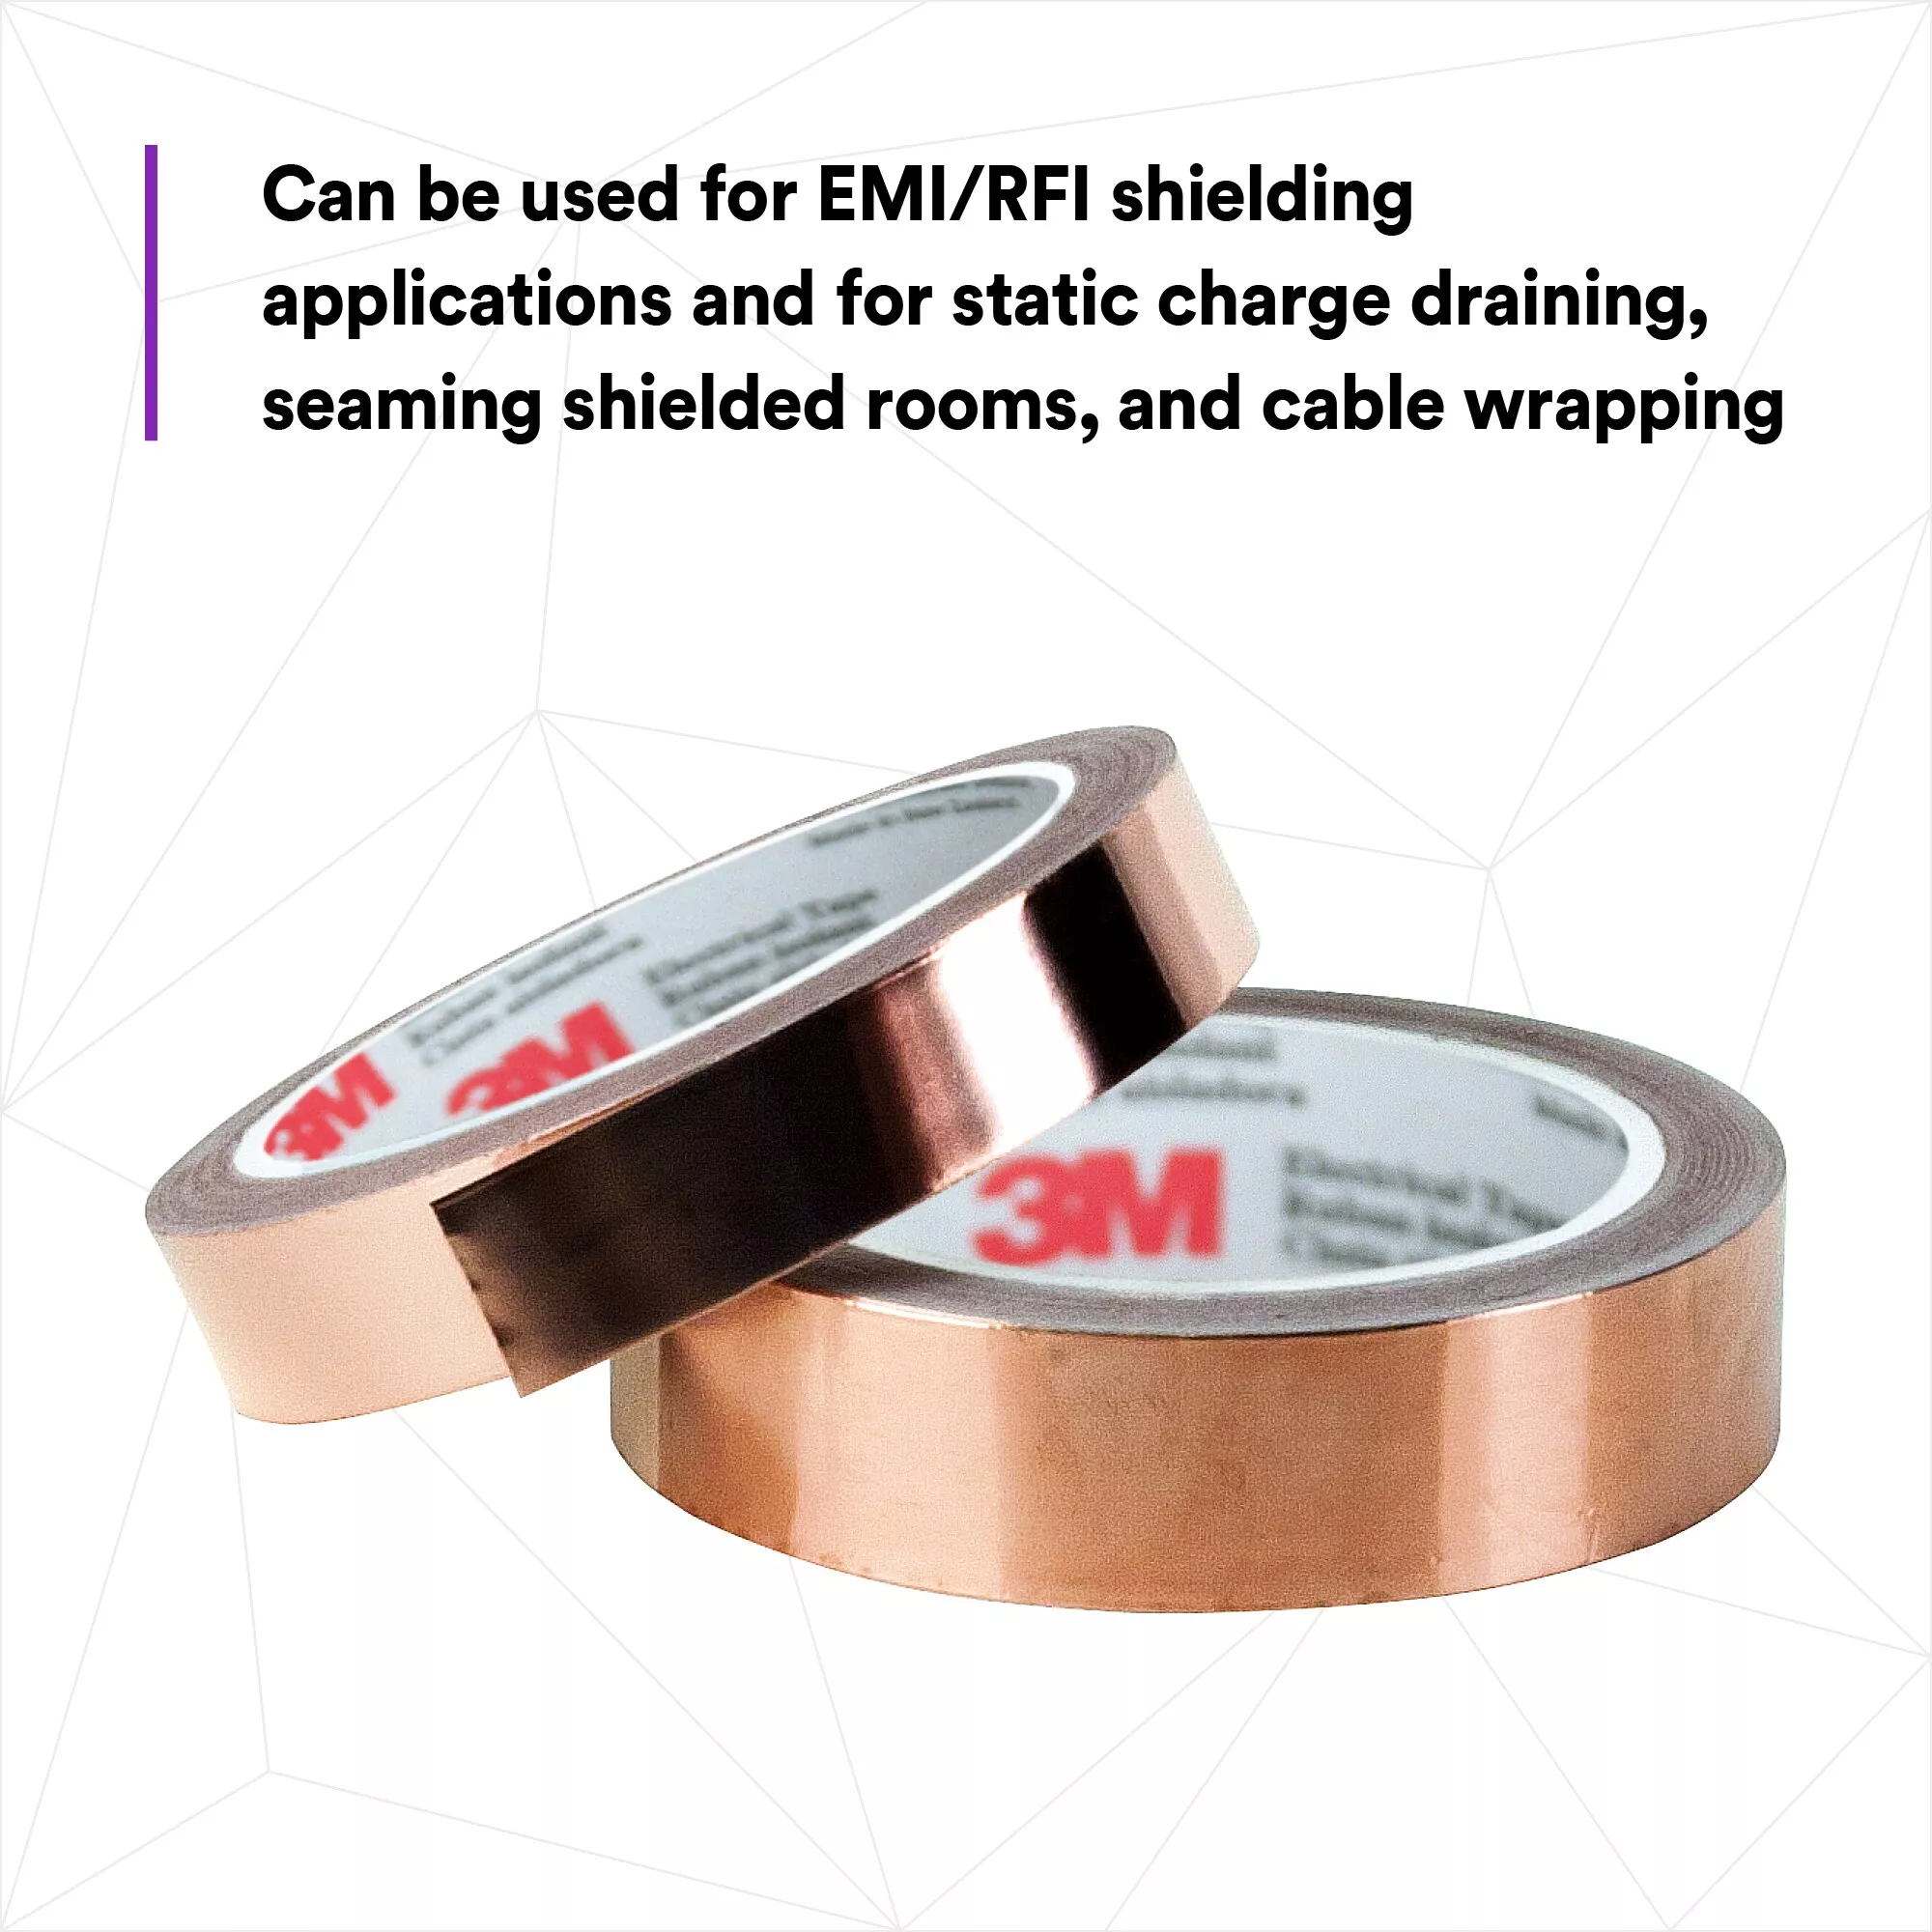 SKU 7000132170 | 3M™ EMI Copper Foil Shielding Tape 1181